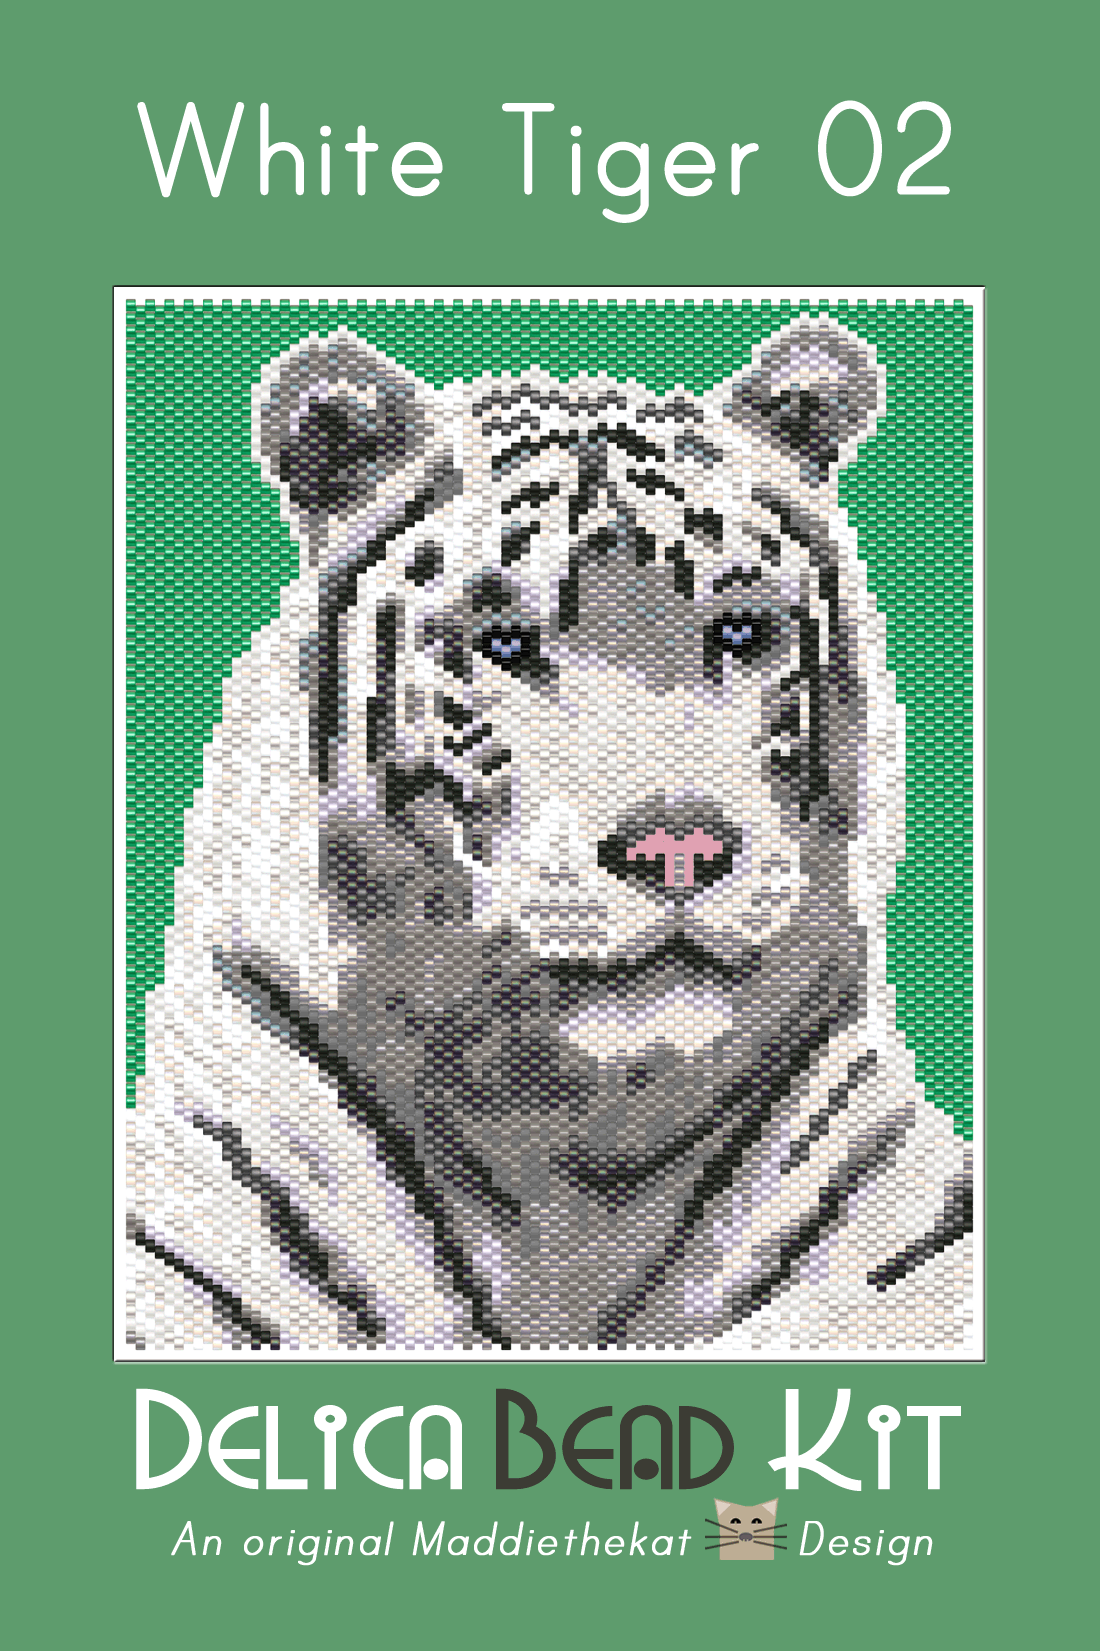 White Tiger 02 Larger Peyote Bead Pattern PDF or Bead Kit